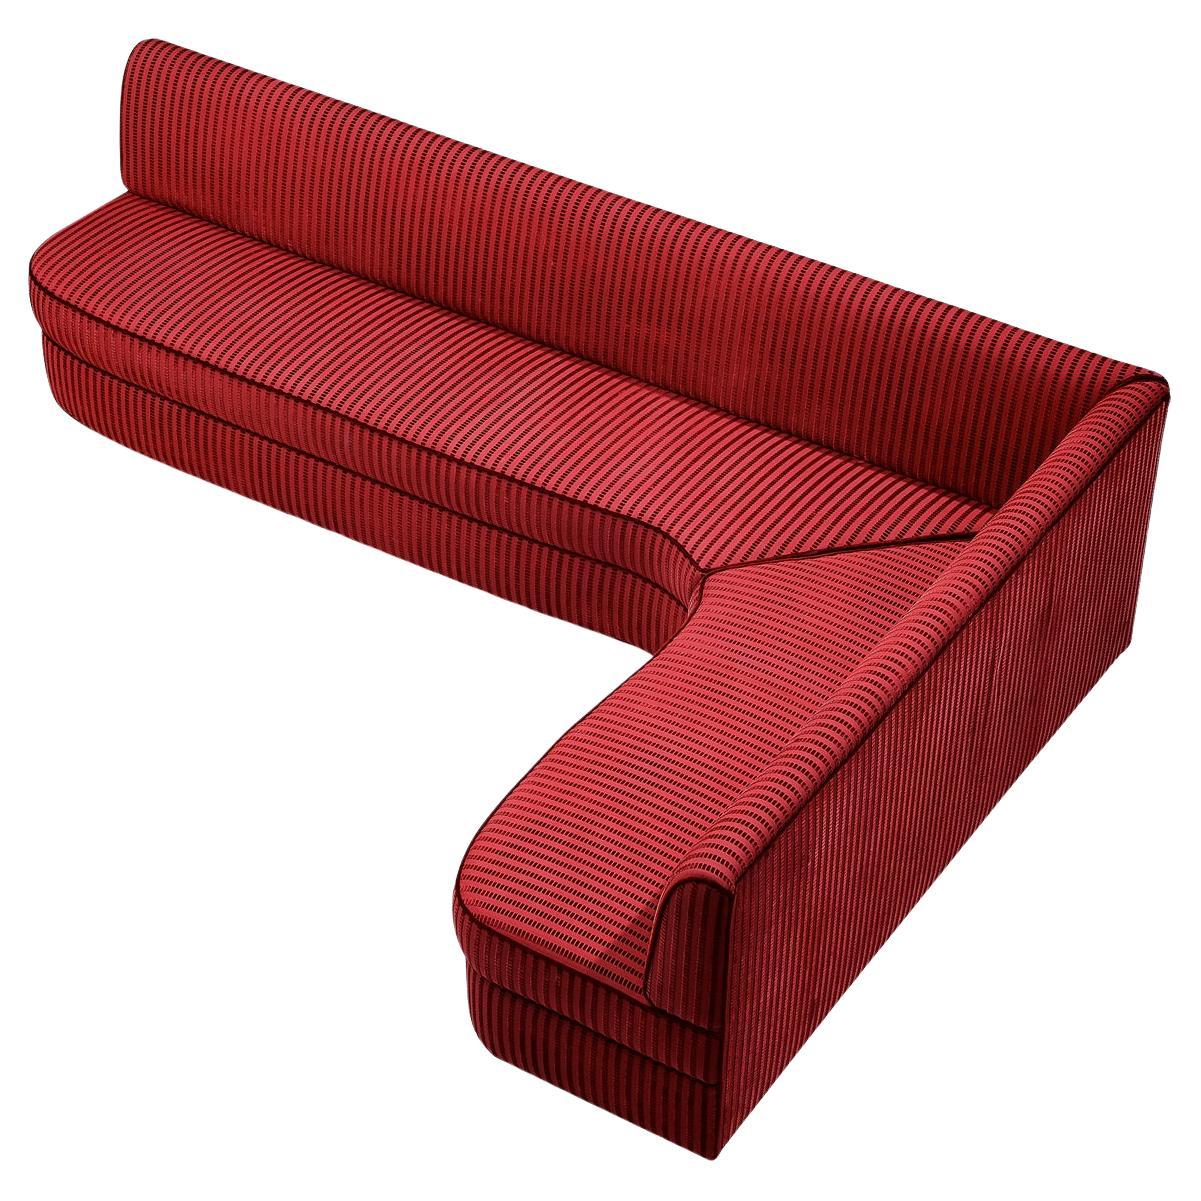 Italian Corner Sofa in Red Upholstery